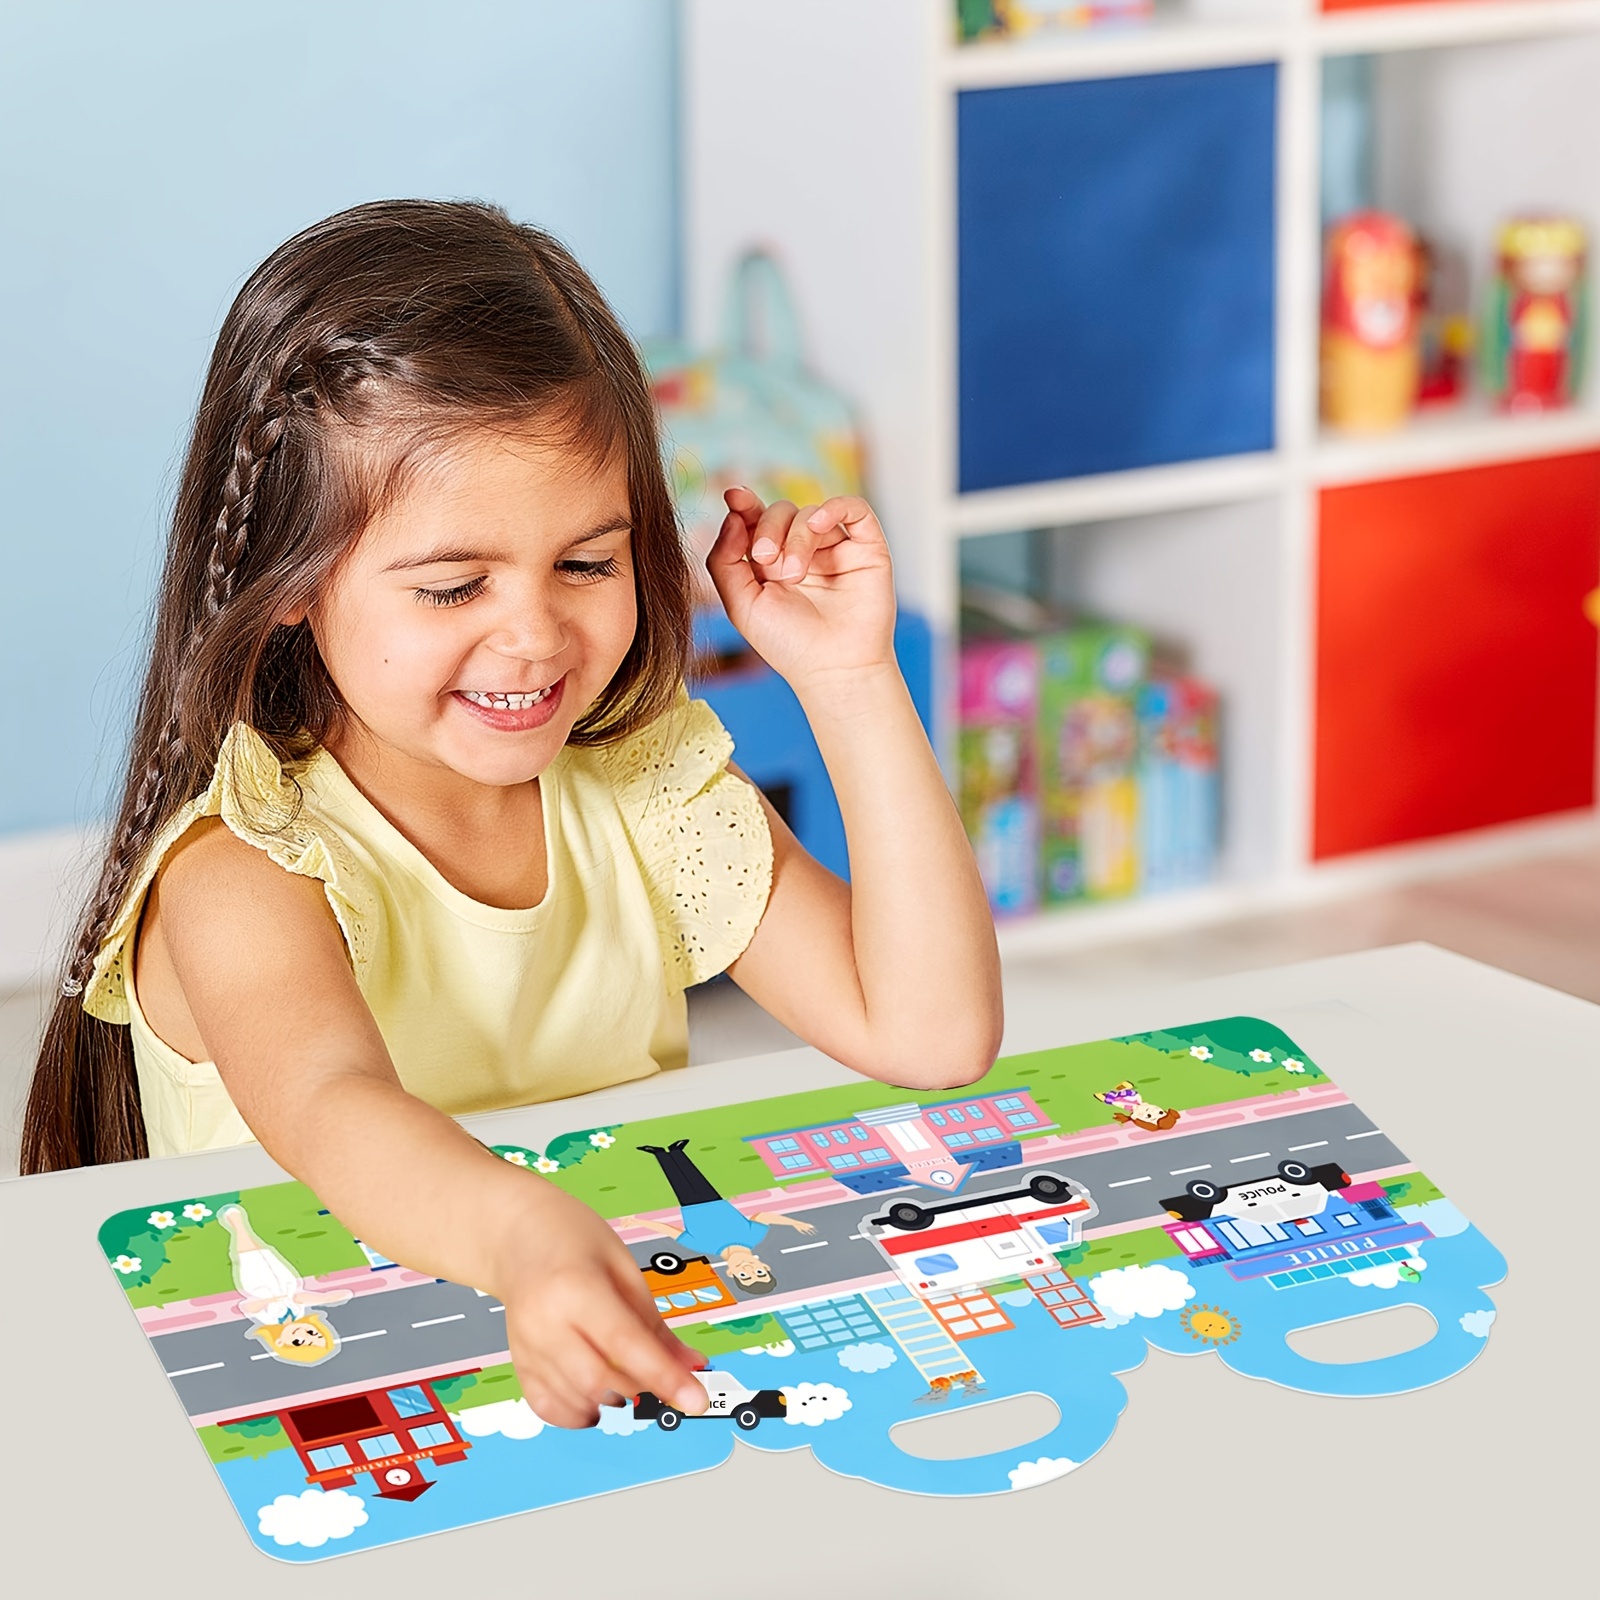 Libros De Pegatinas Reutilizables Para Niños De 2 A 4 Años, 5 Juegos De  Libros De Pegatinas Para Niños Pequeños De 1 A 3 Años, Libro De Pegatinas  Para